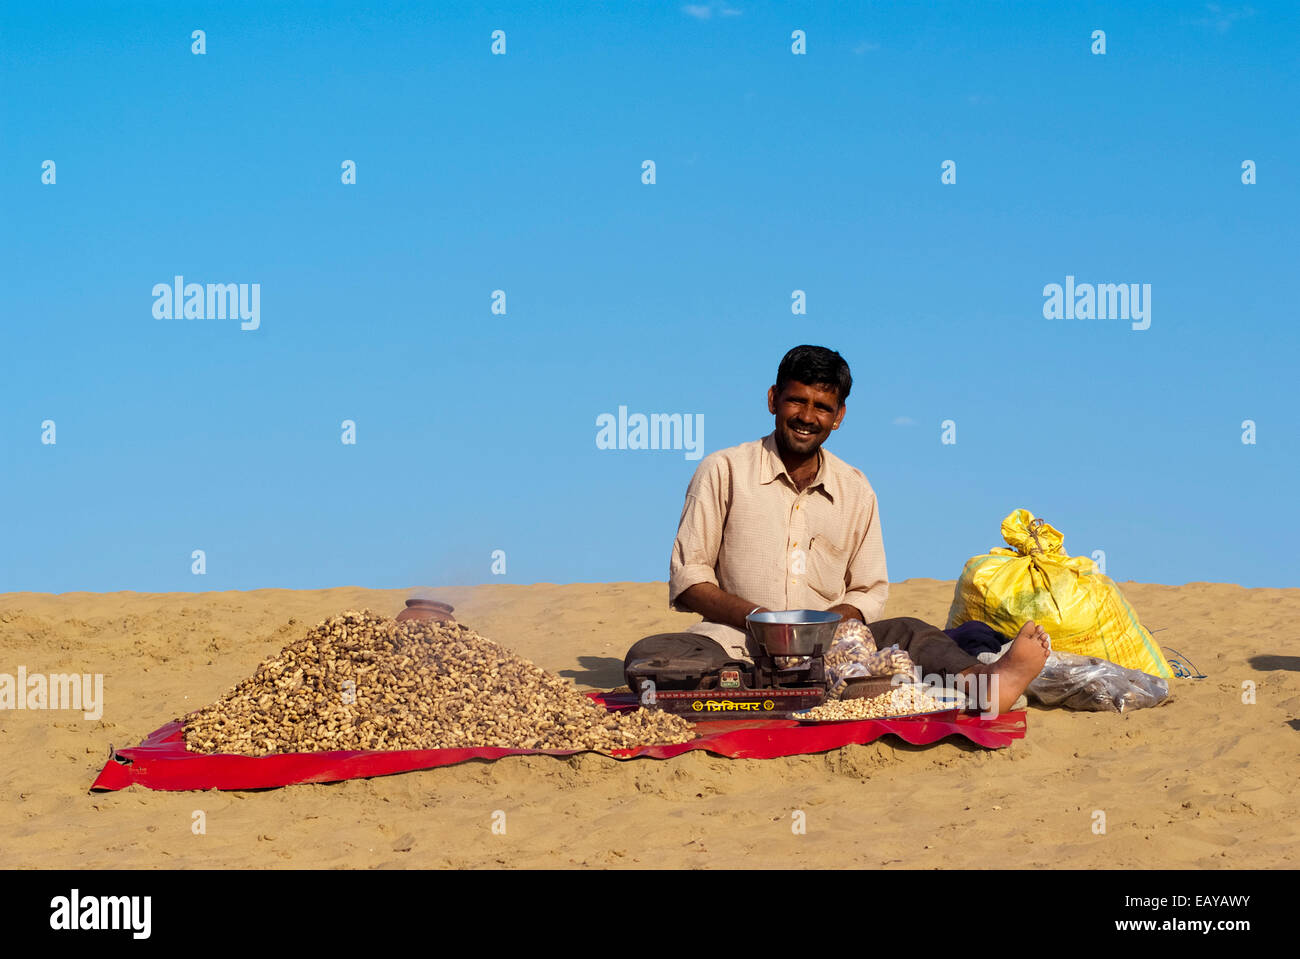 Un homme vend des cacahuètes cuites à la Sam dune de sable, Jaisalmer, Inde Banque D'Images